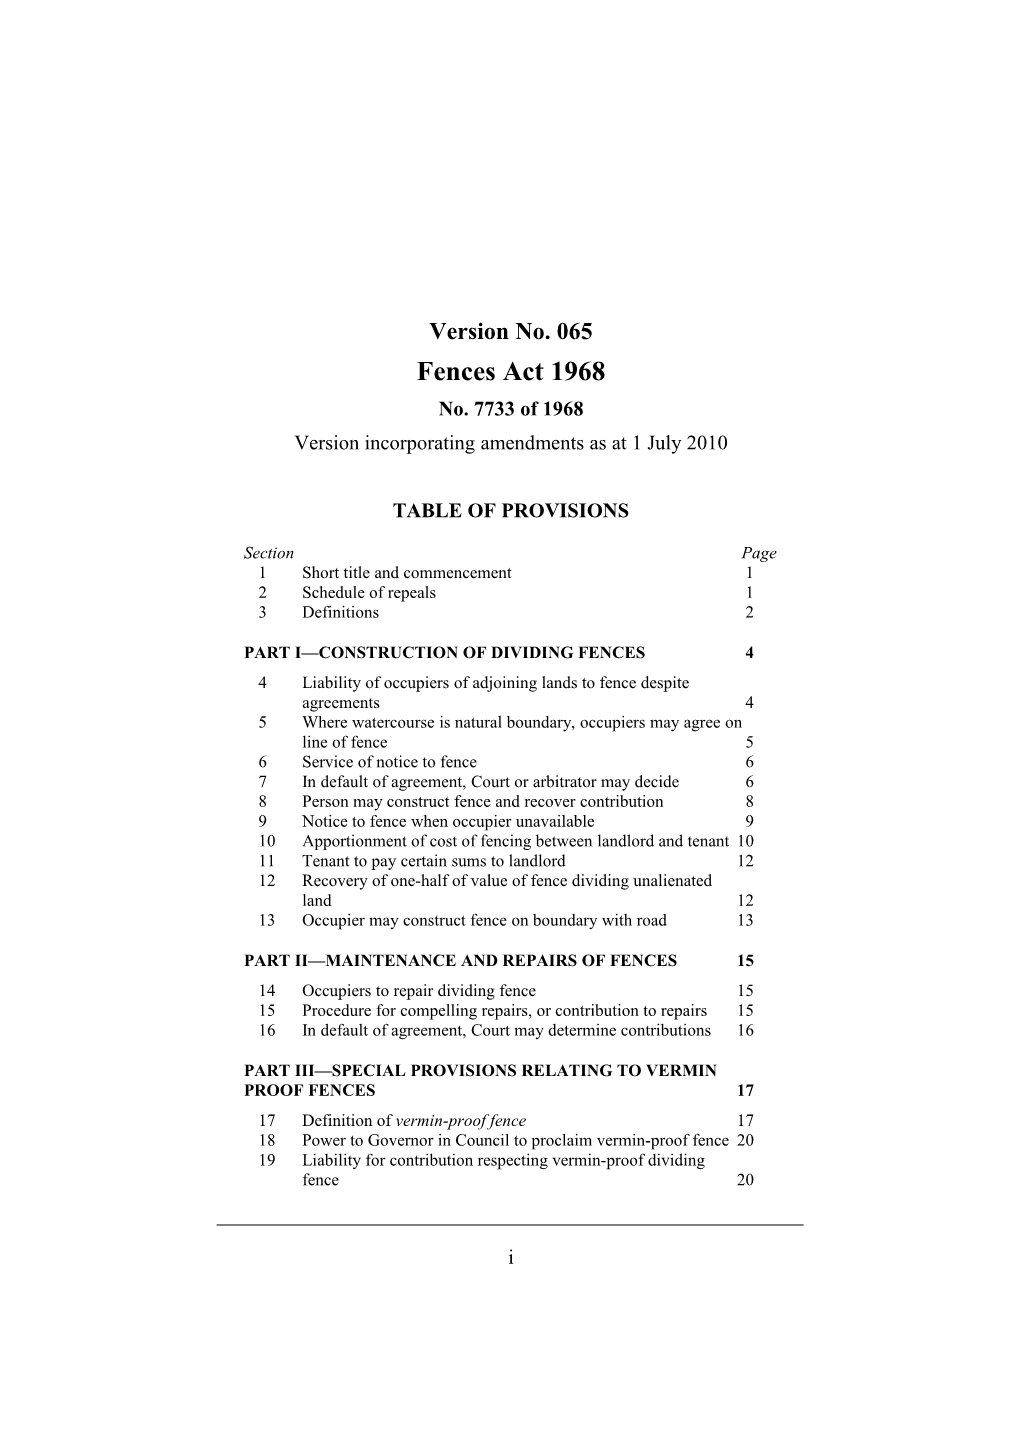 Version Incorporating Amendments As at 1 July 2010